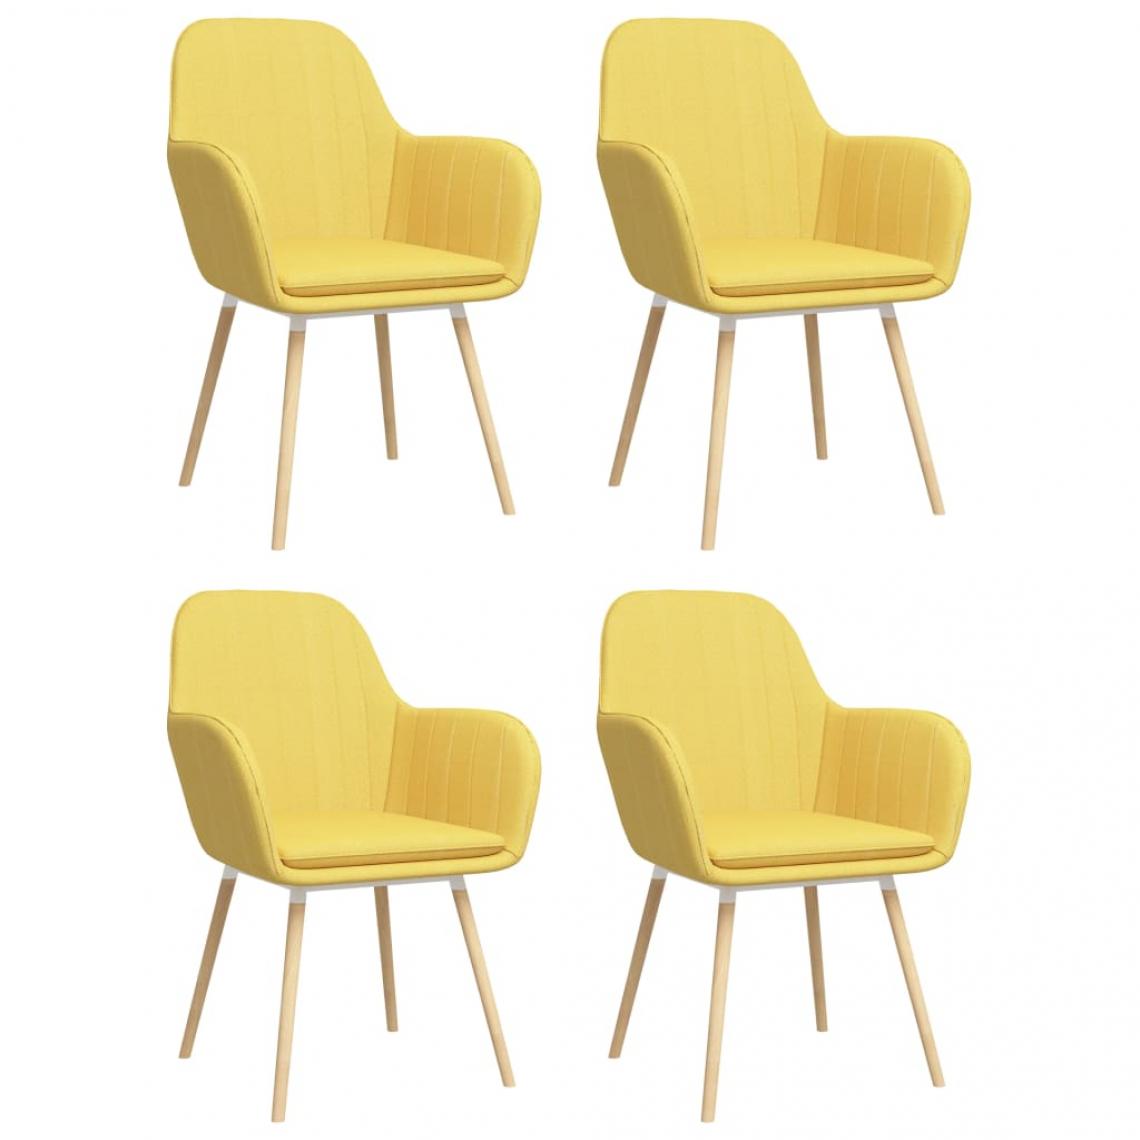 Decoshop26 - Lot de 4 chaises de salle à manger cuisine avec accoudoirs design élégant tissu jaune CDS021206 - Chaises